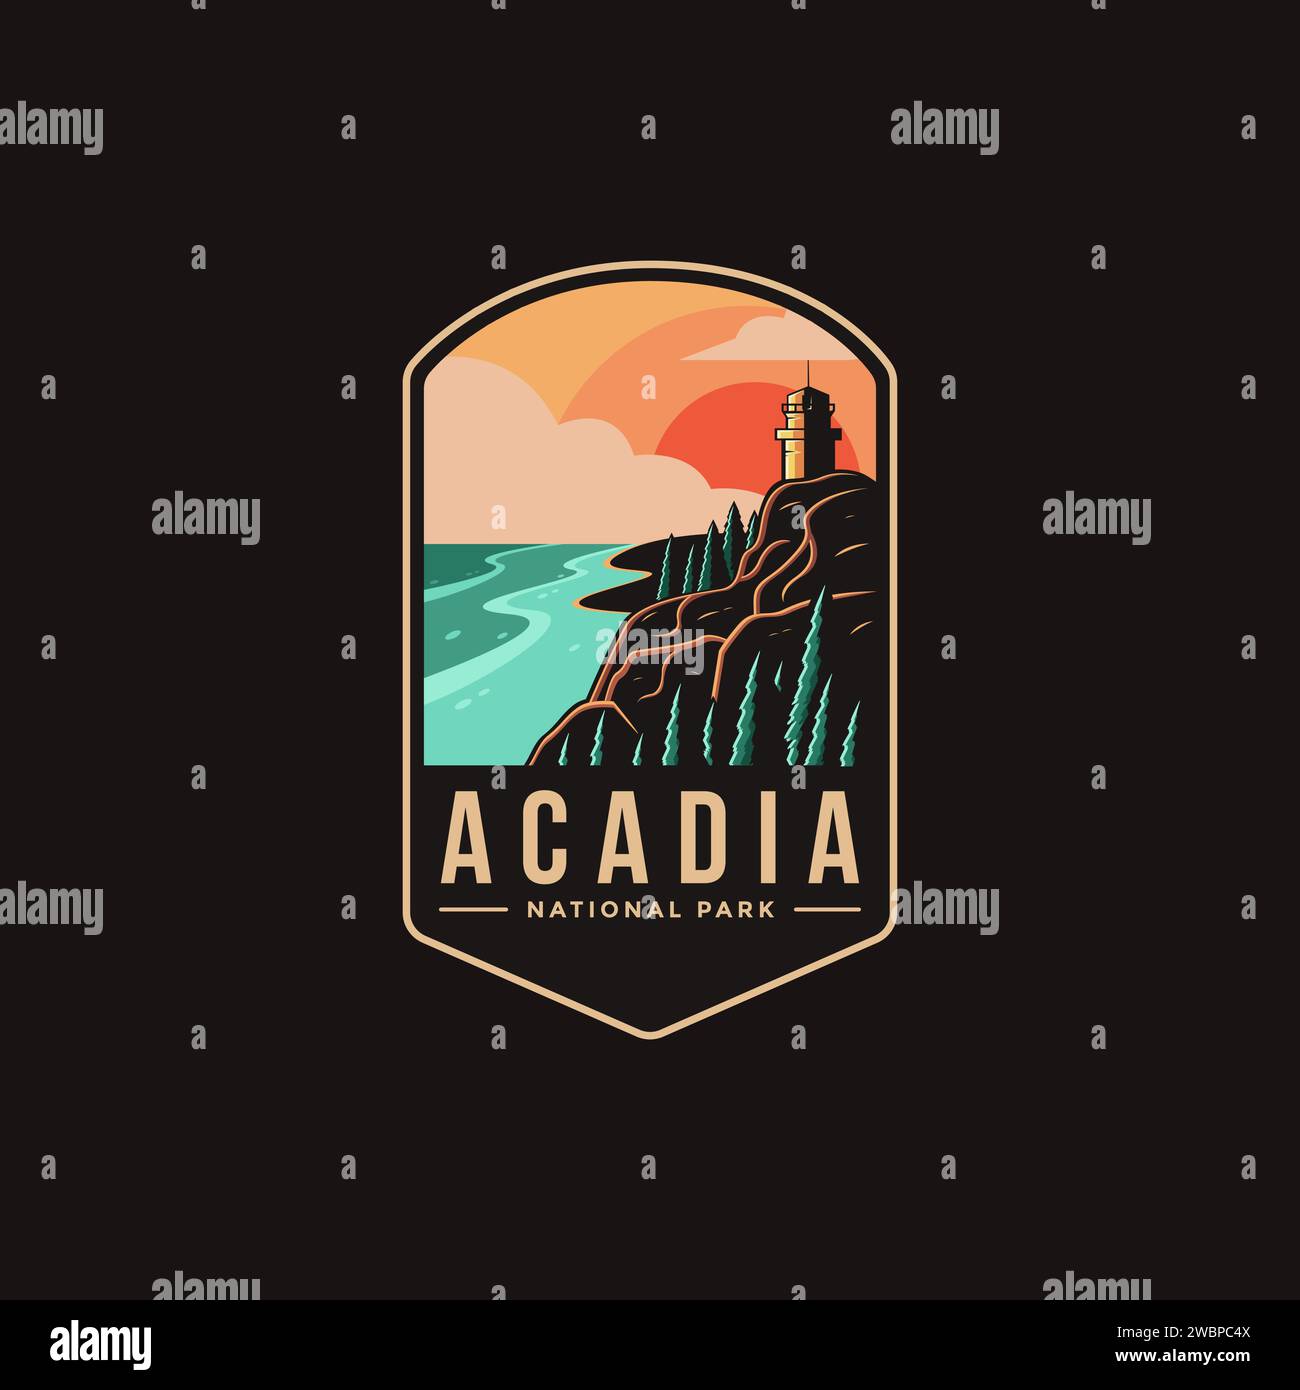 Emblème patch logo illustration du parc national Acadia sur fond sombre Illustration de Vecteur